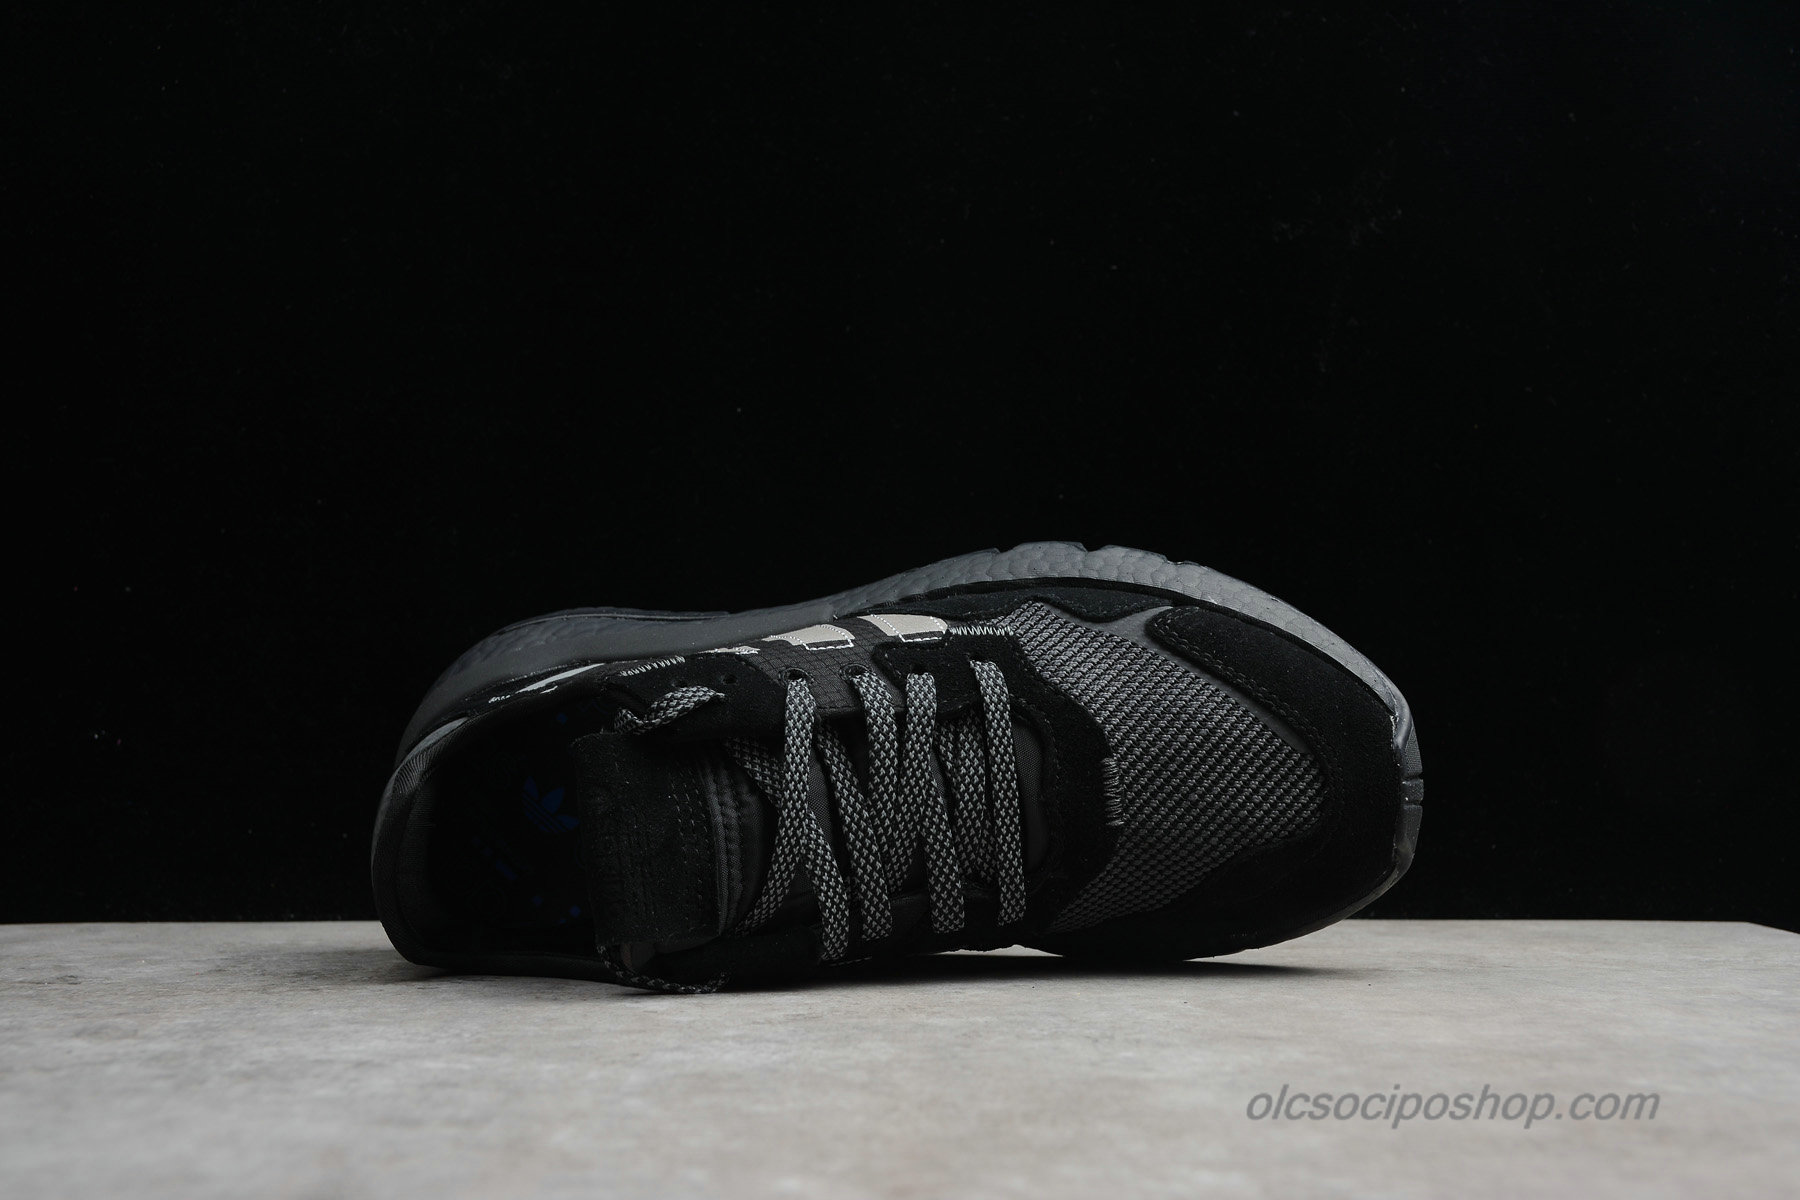 Adidas Nite Jogger 2019 Boost 3M Fekete/Szürke Cipők (CG7098) - Kattintásra bezárul